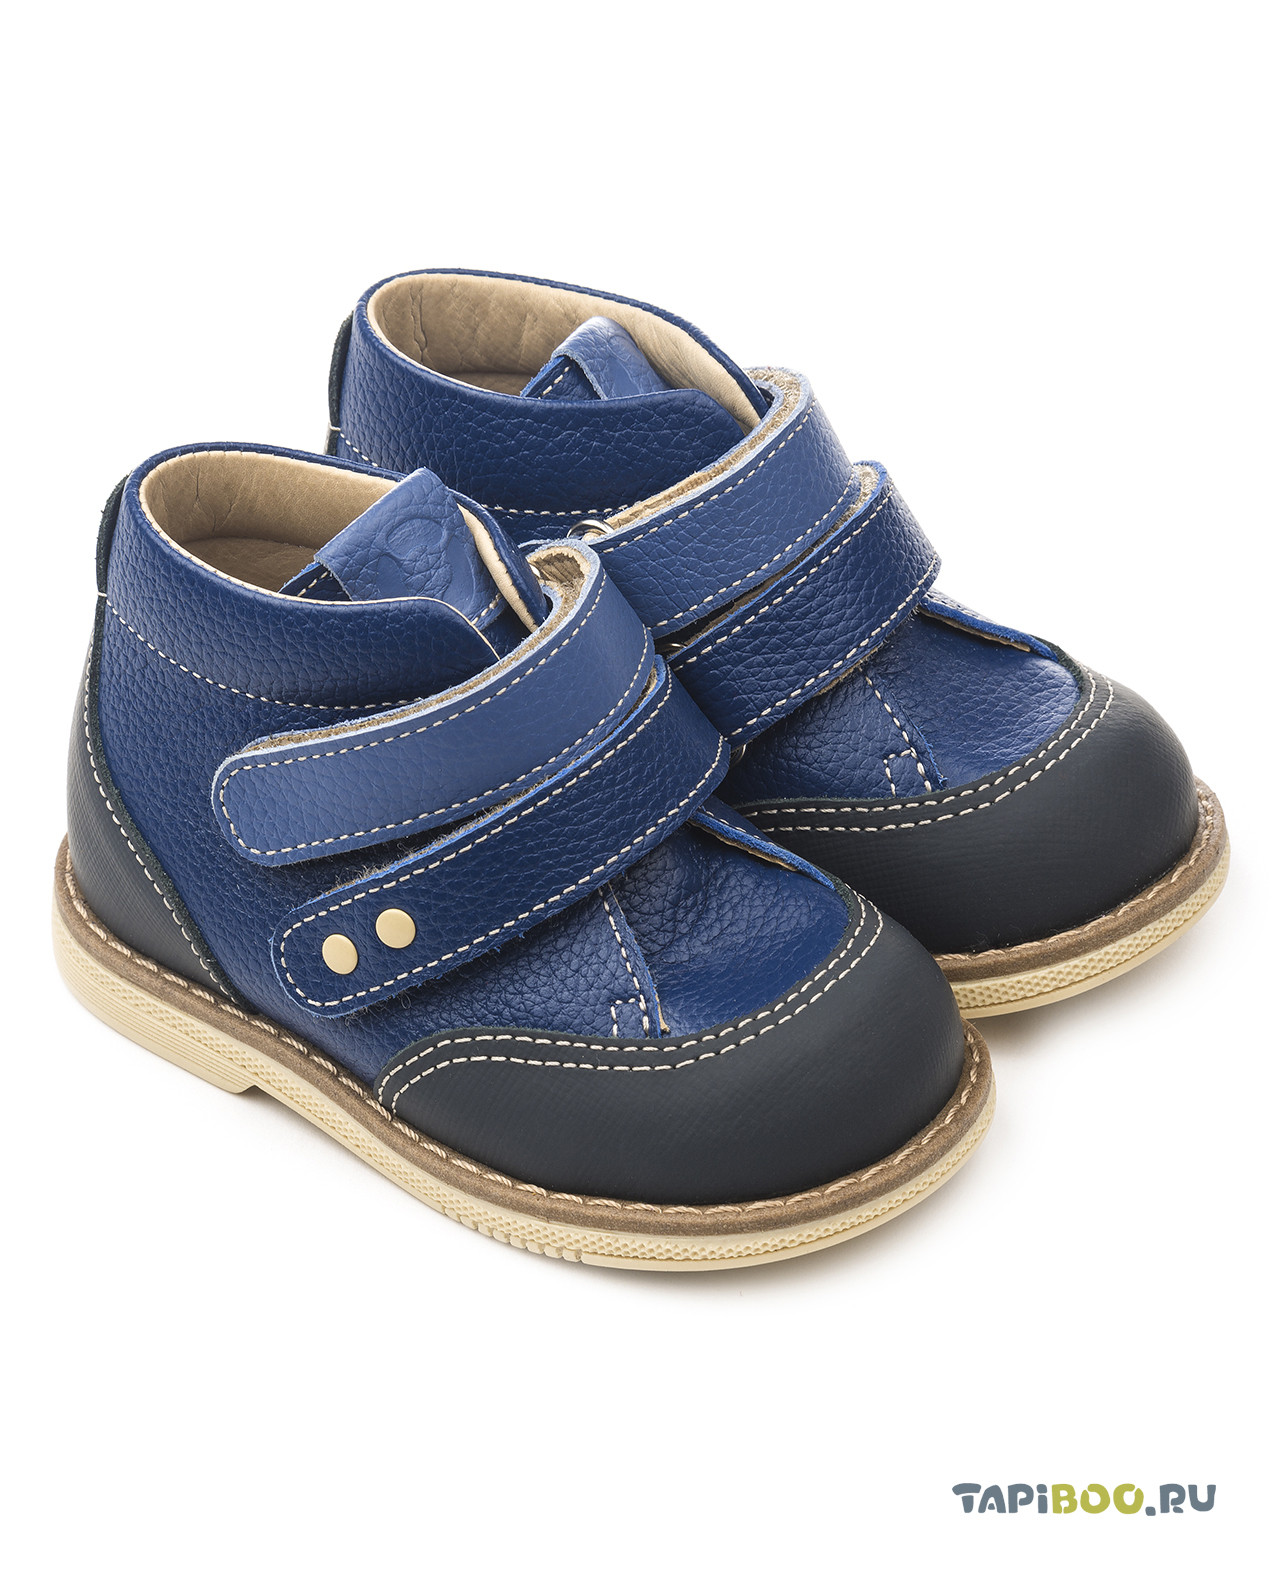 Ботинки детские Tapiboo ВАСИЛЁК синий (73076, 25) ботинки детские tapiboo василёк синий 72525 24